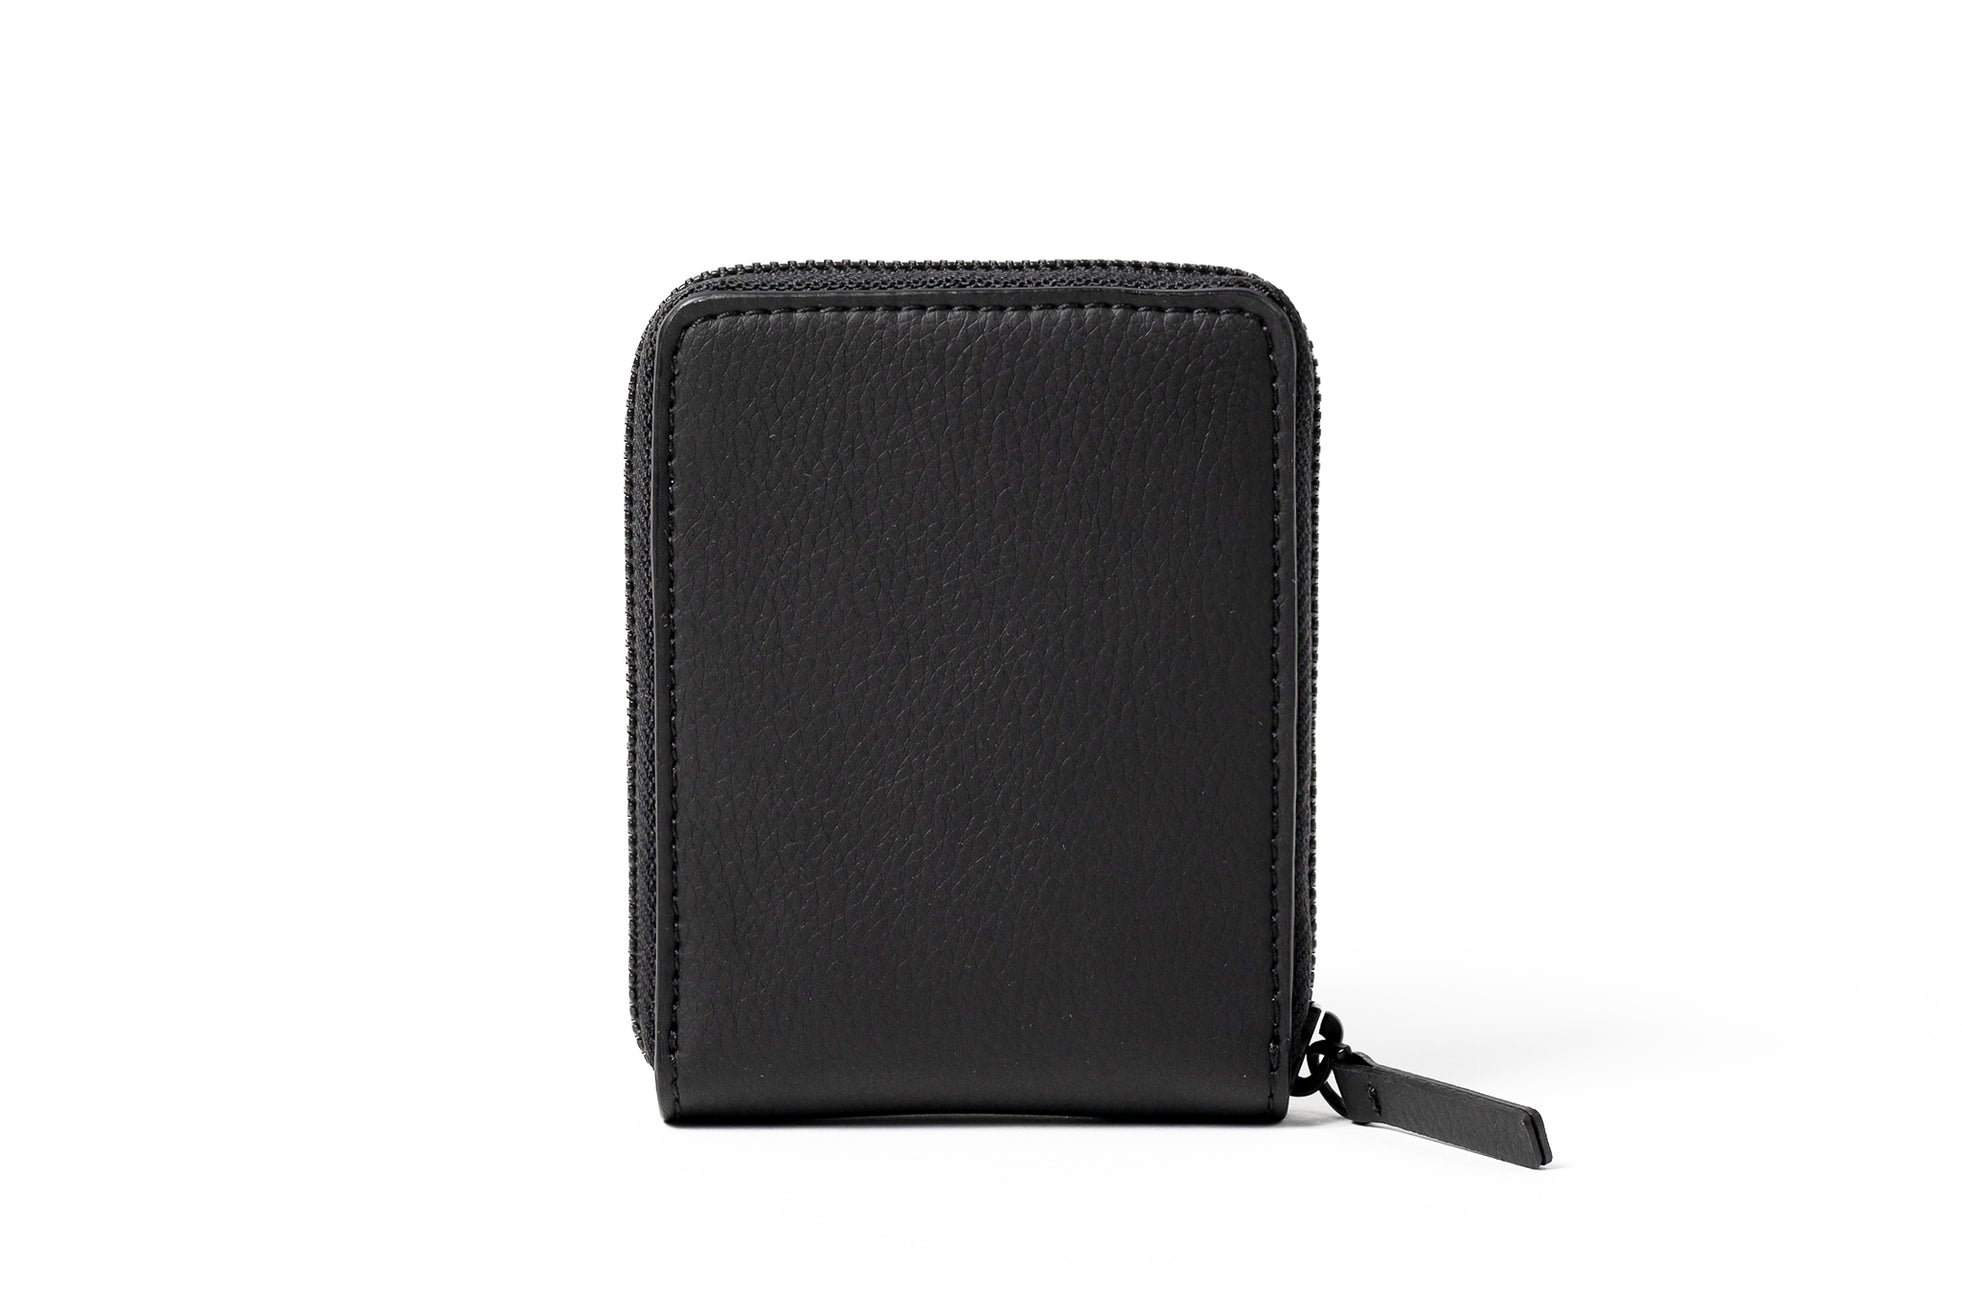 The Zip-Around Wallet in Technik in Black image 2